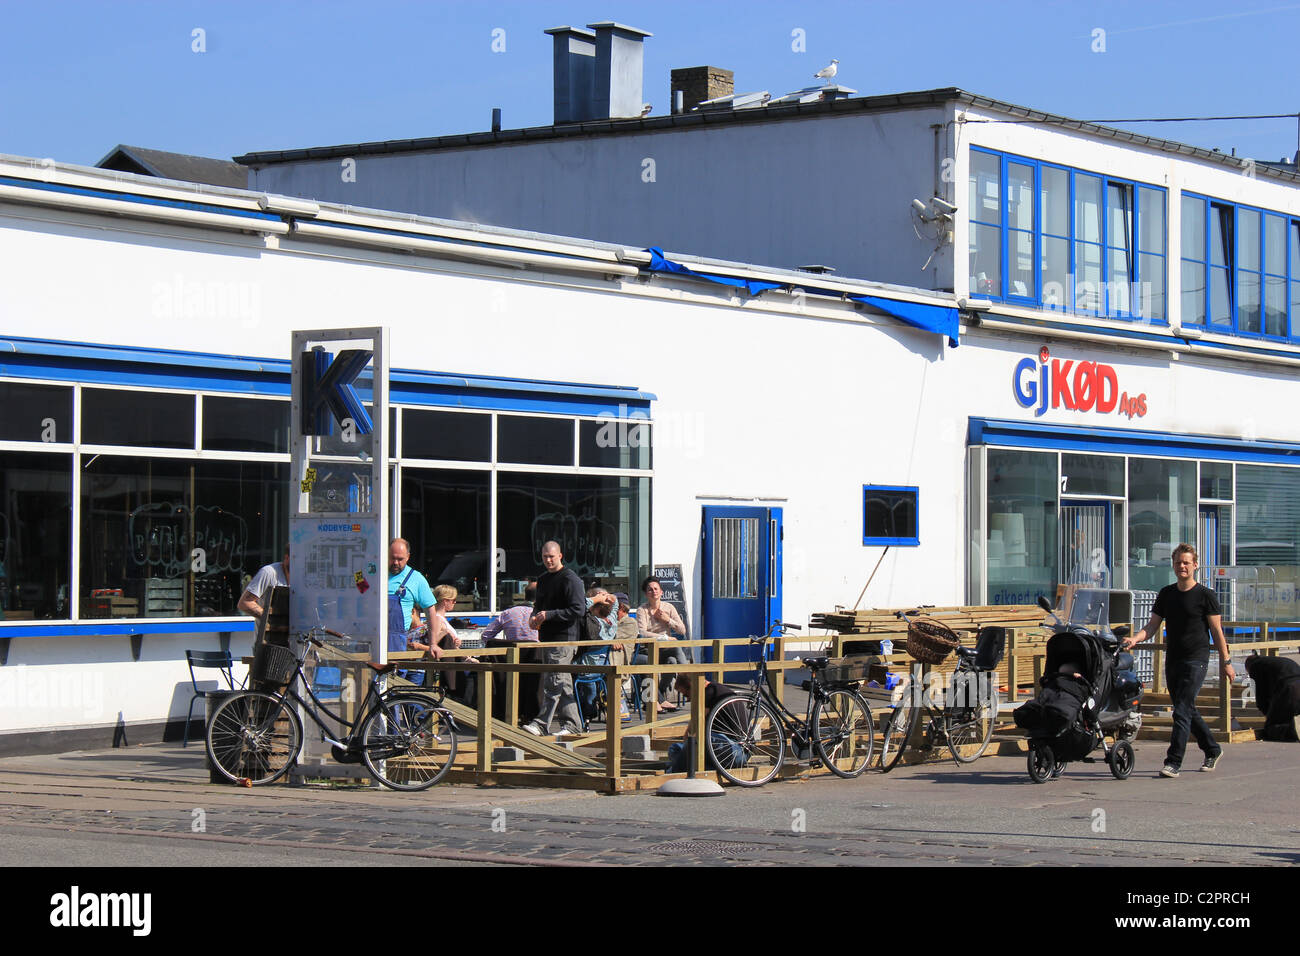 Restaurant with terrace in Meatpacking district (Kødbyen in Danish), Copenhagen, Stock Photo - Alamy